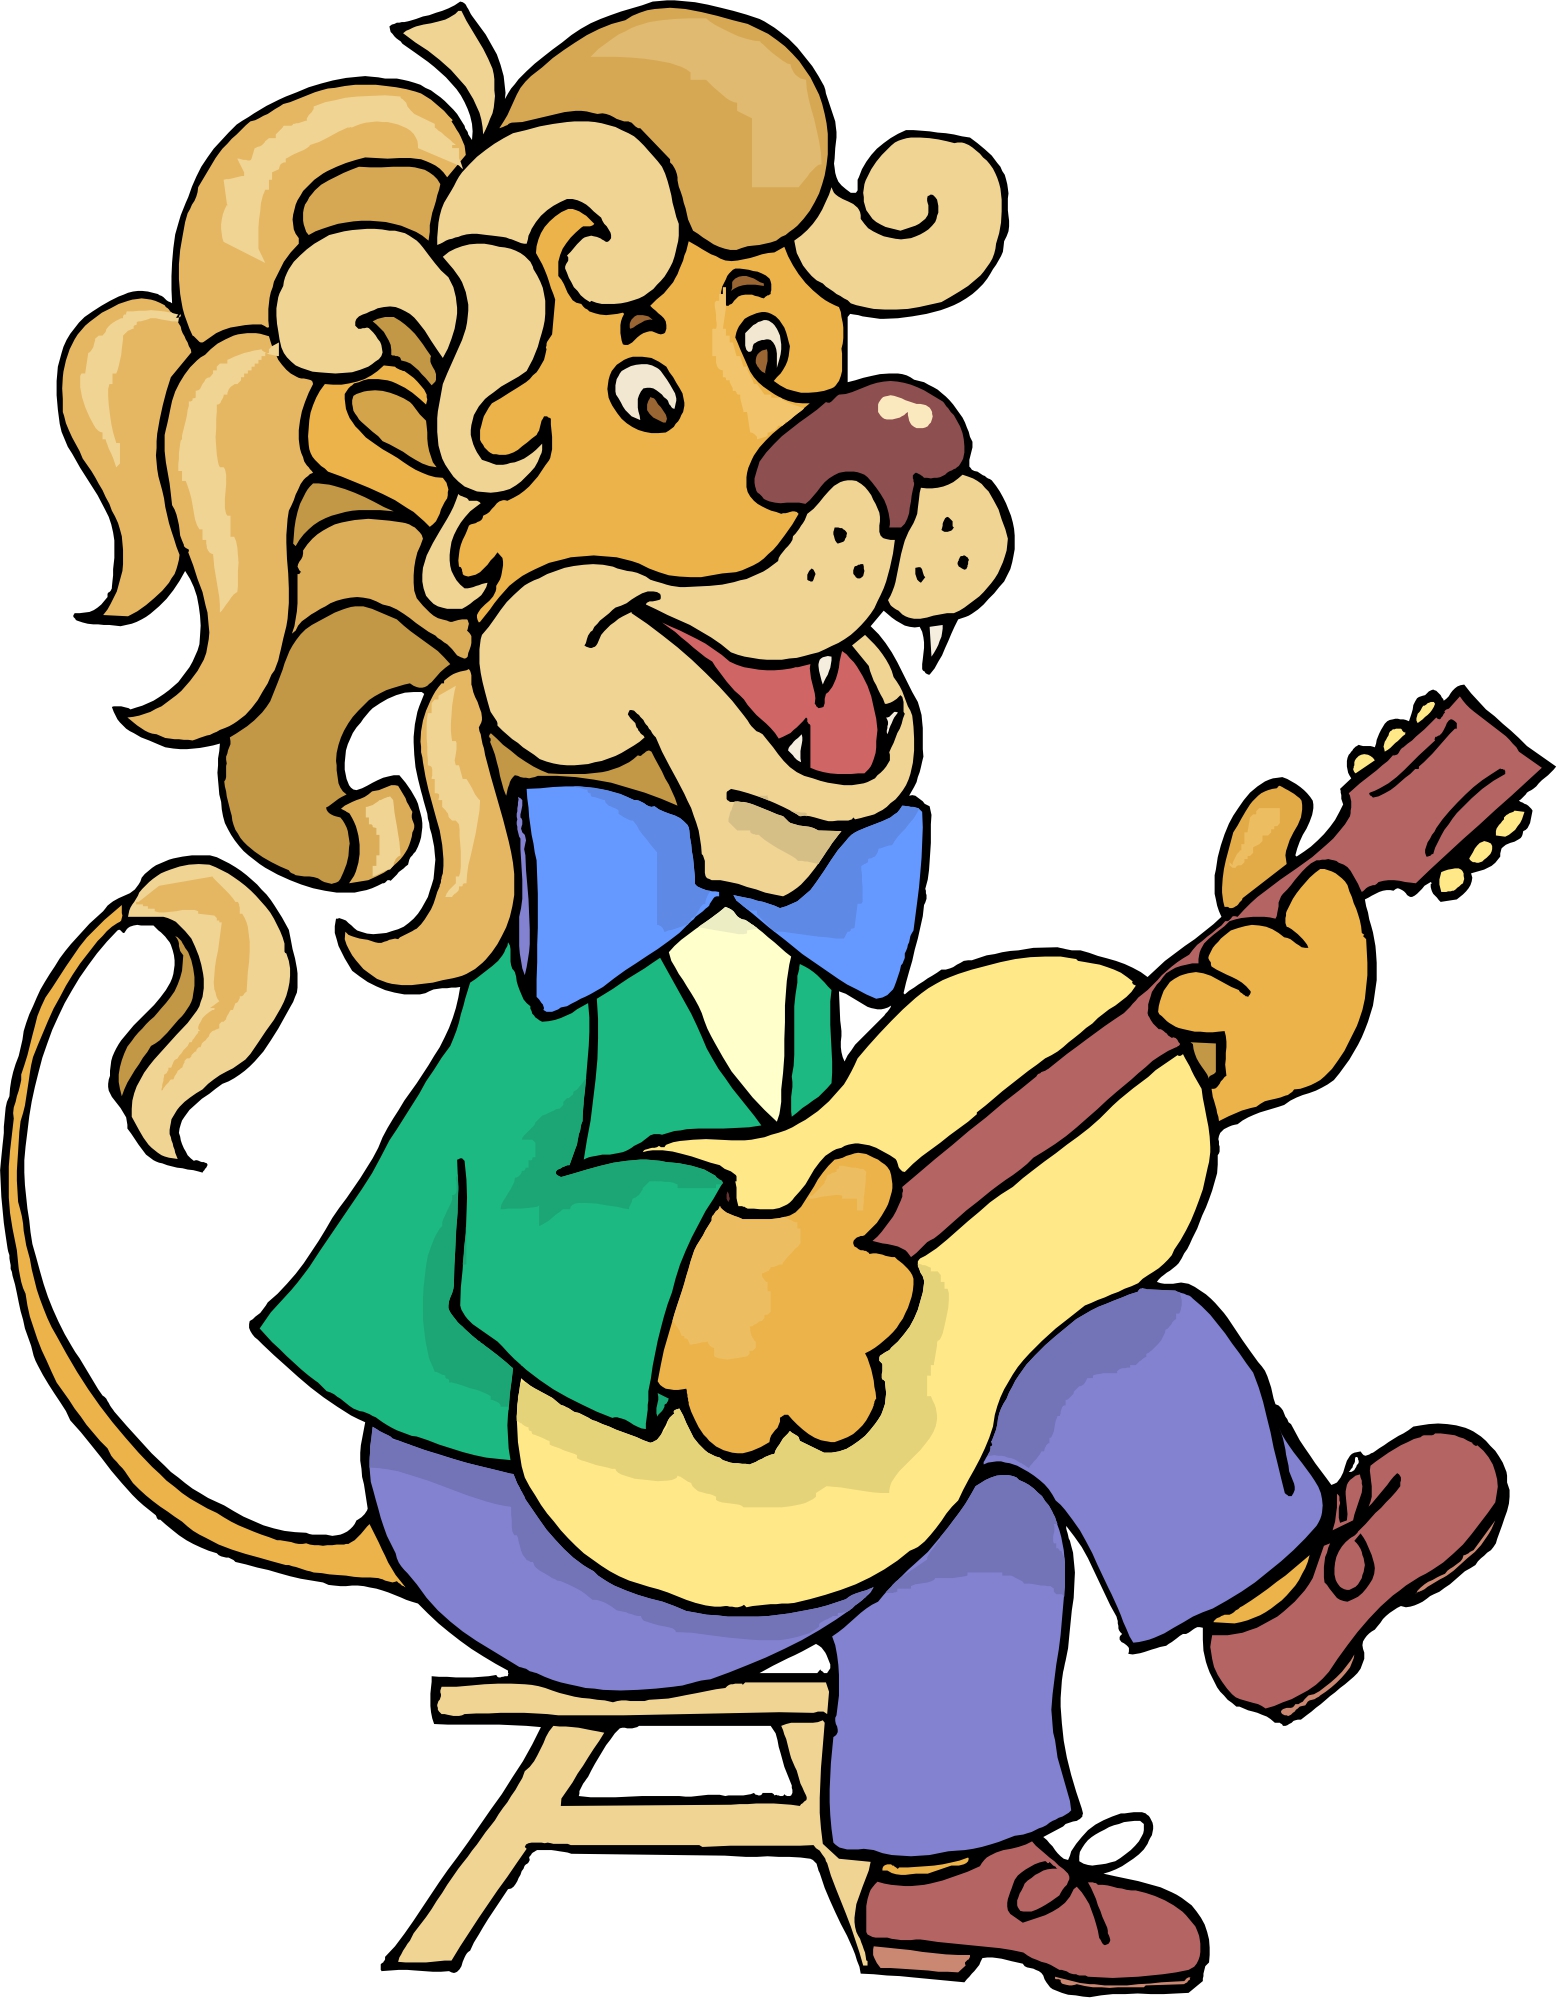 Cartoon Guitar Player